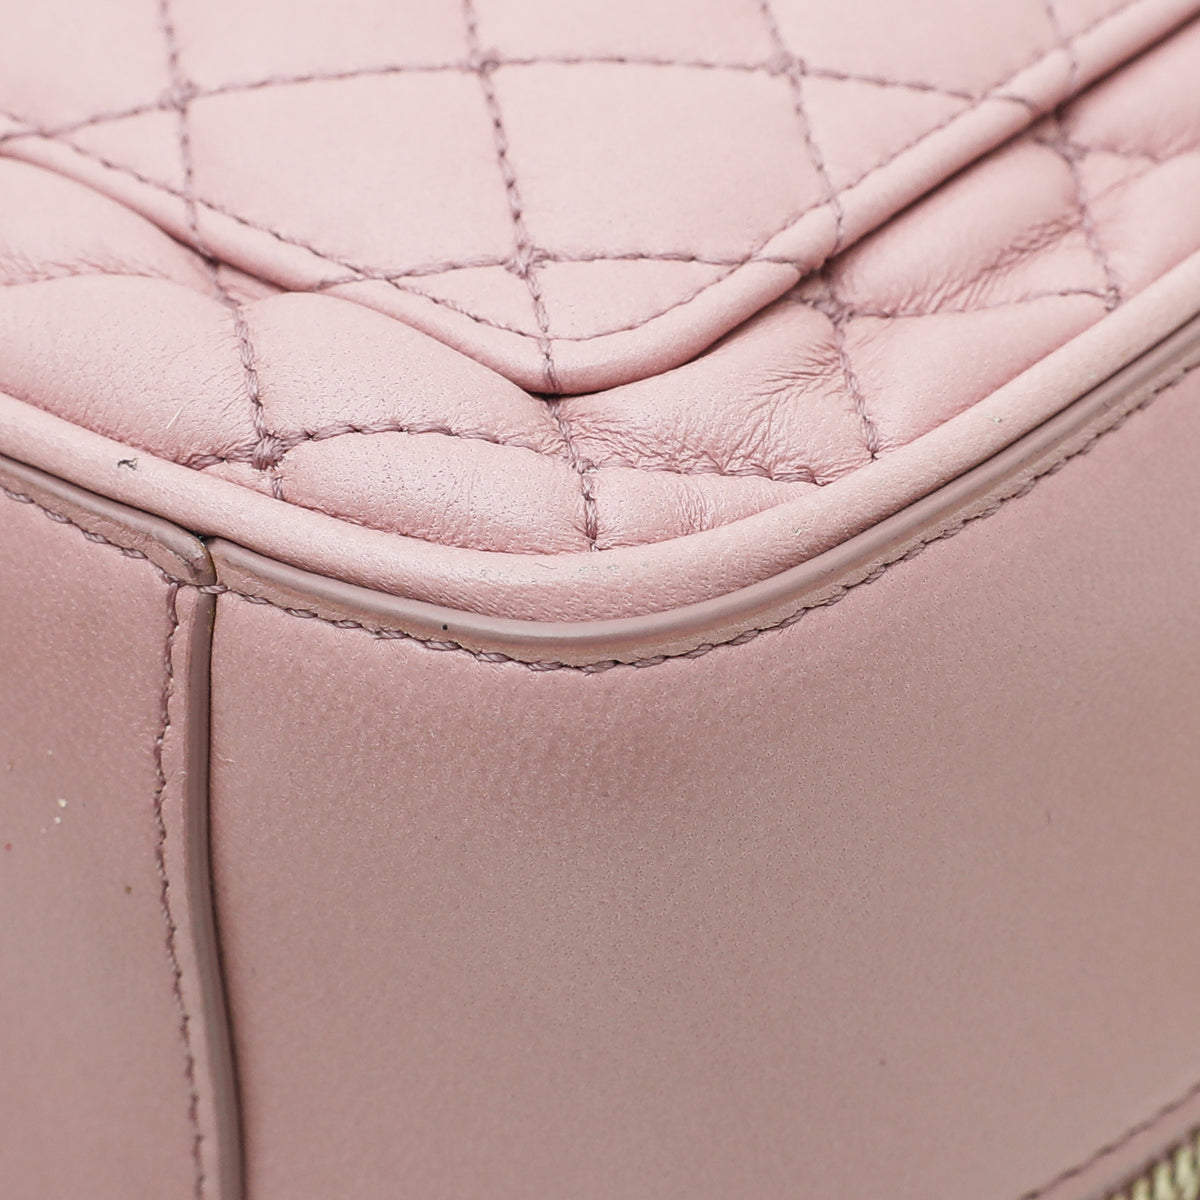 Dolce & Gabbana Pink Dolce Soft Embellished Small Bag